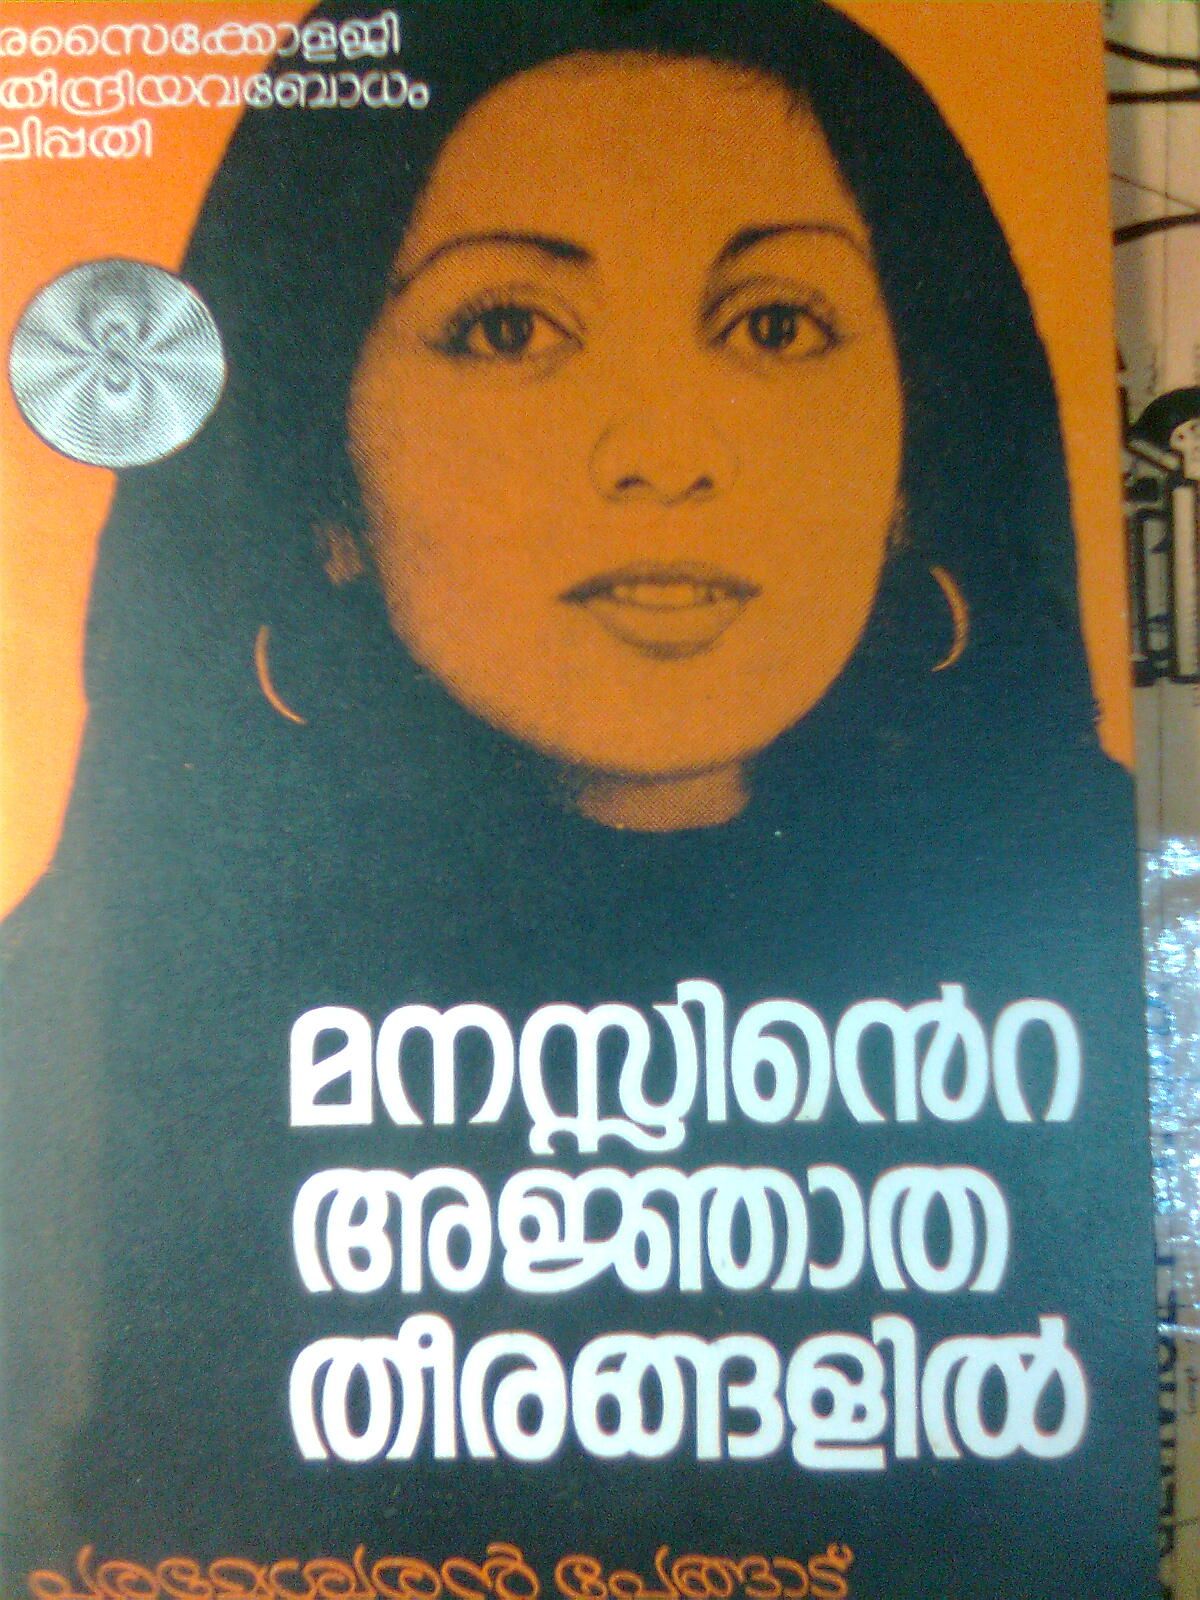 abdul kalam agni siragugal book in tamil download